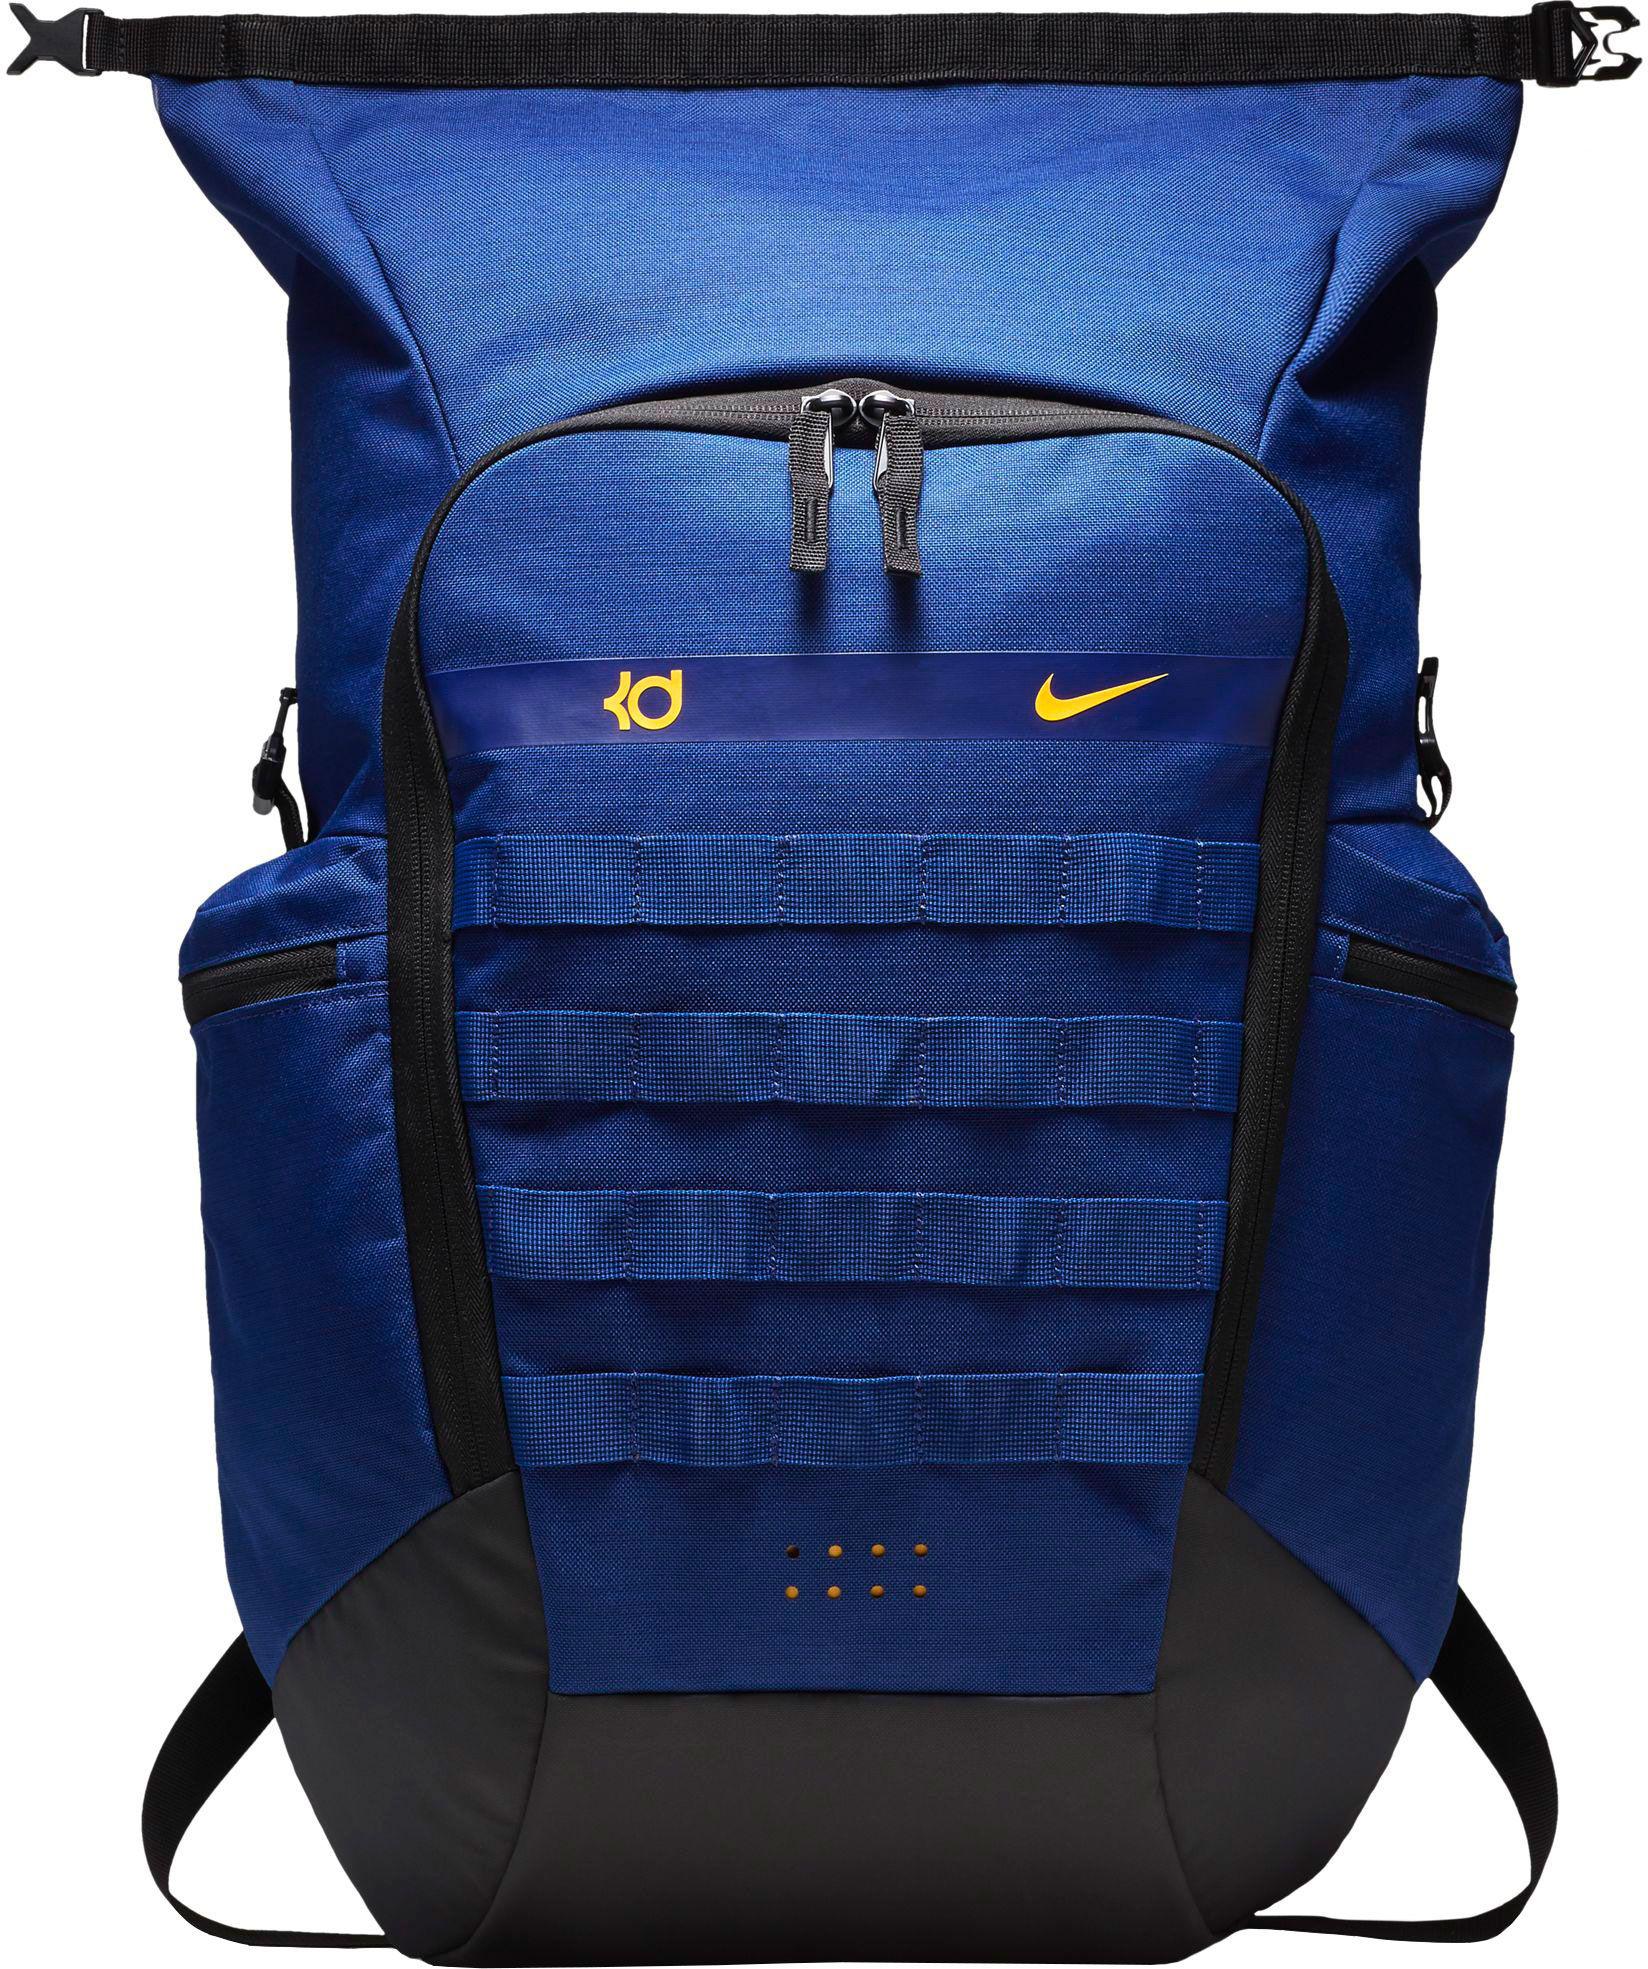 kd trey 5 backpack blue